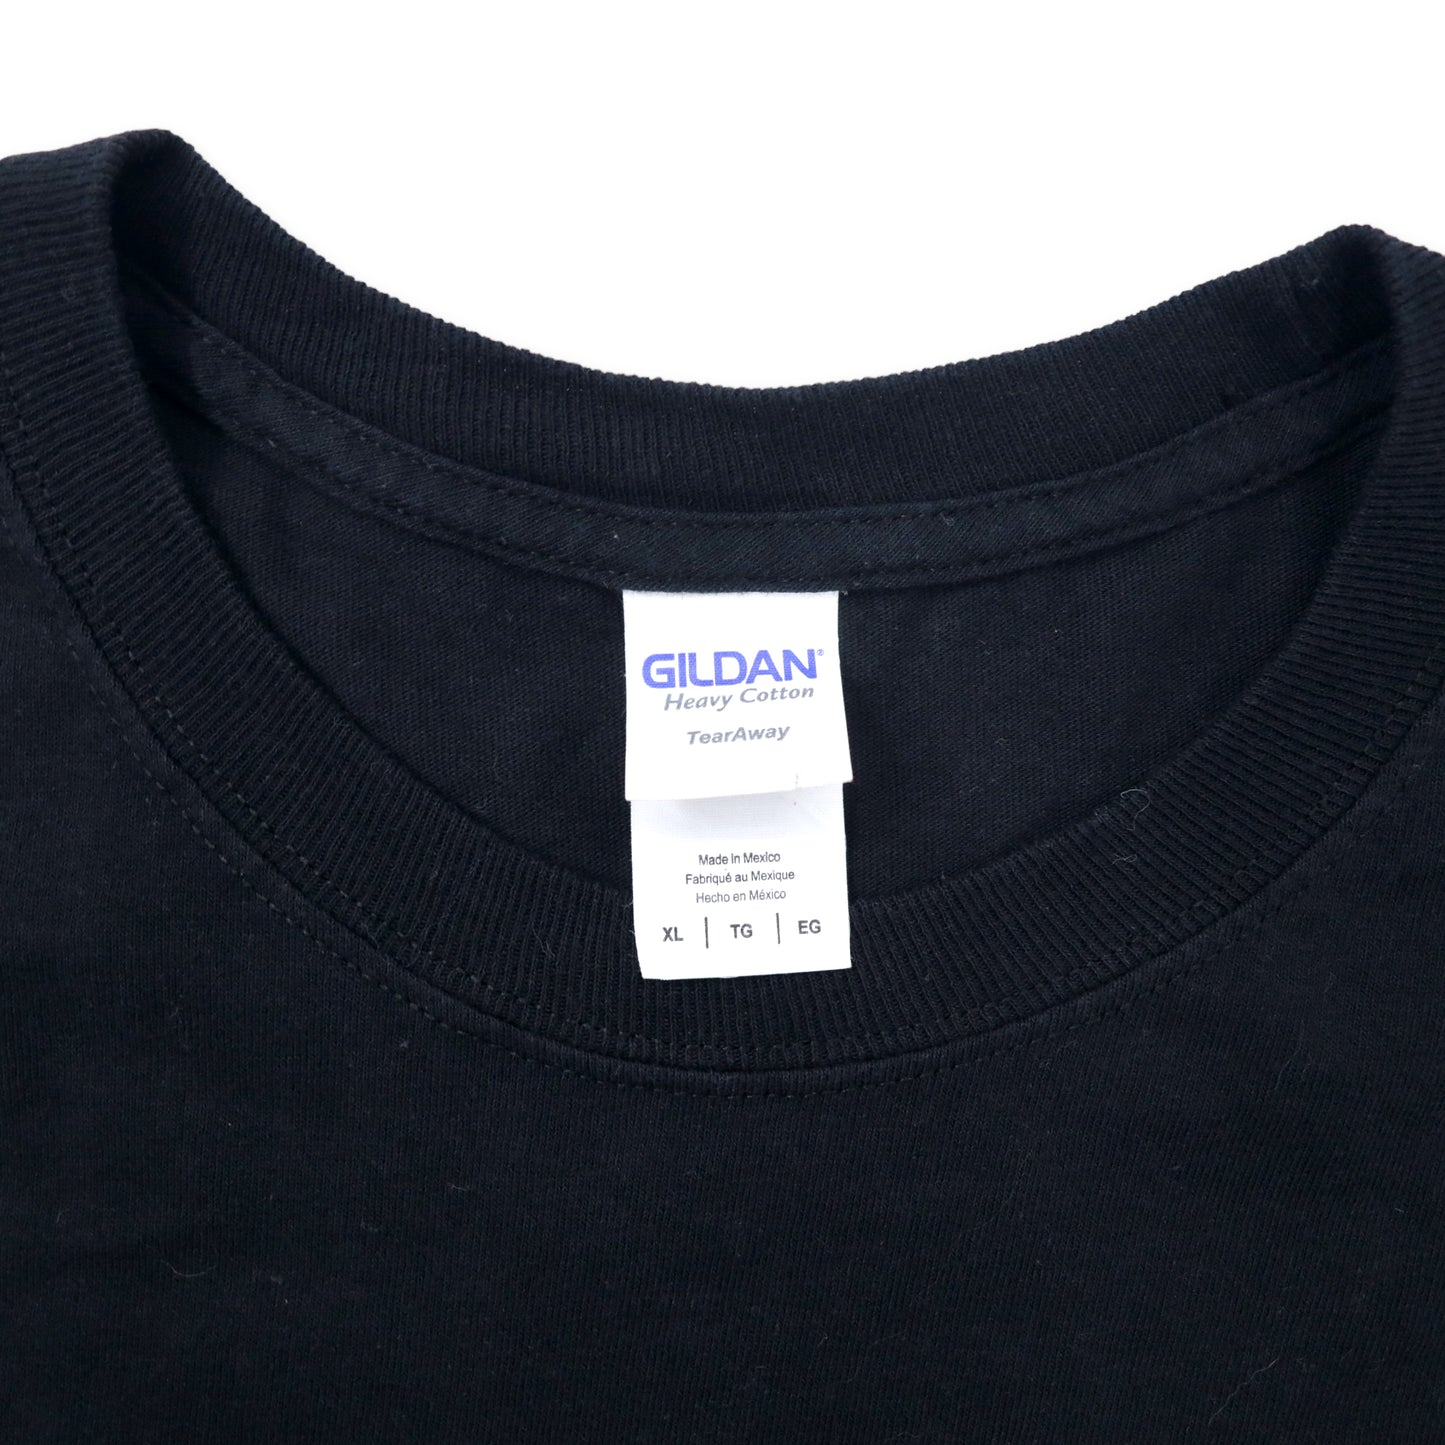 GILDAN ビッグサイズ プリントTシャツ XL ブラック コットン BE FREE メキシコ製